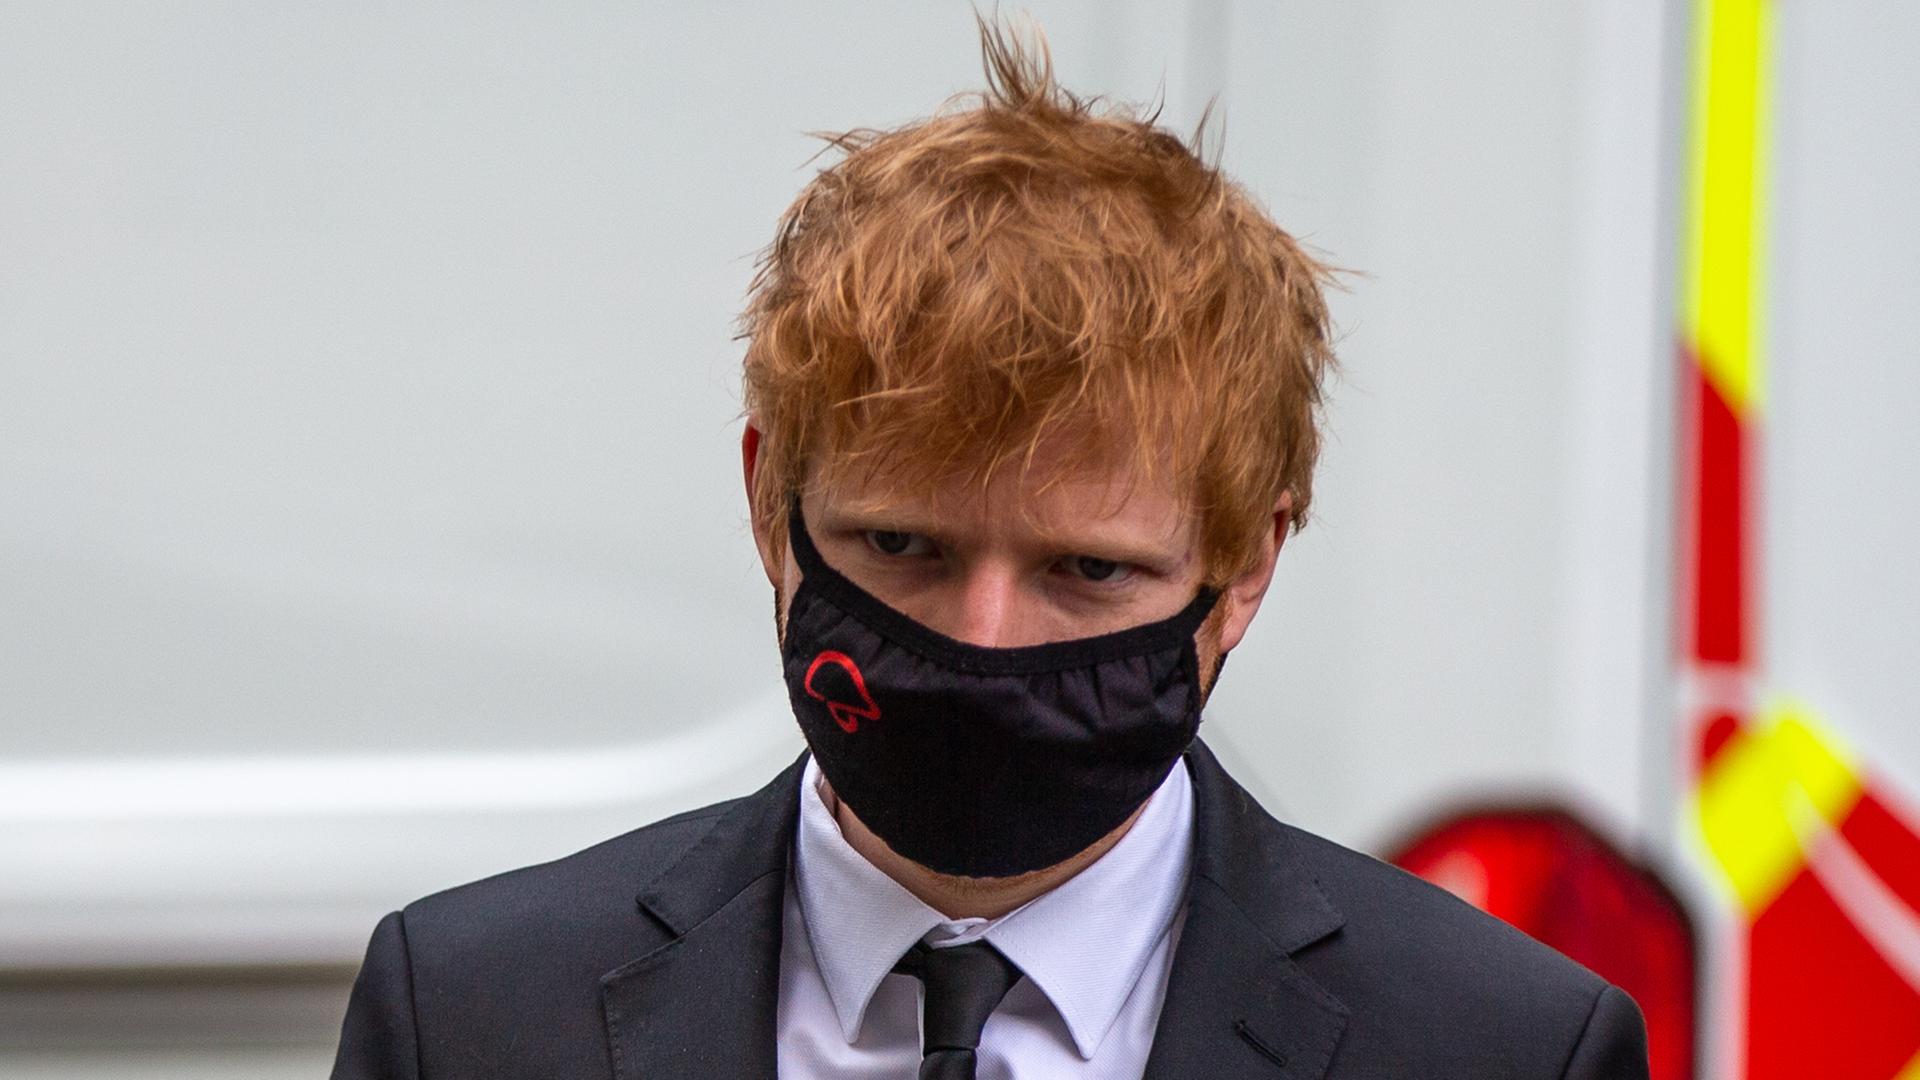 Musiker Ed Sheeran erscheint in Anzug und Krawatte, mit einer Schutzmaske im Gesicht, vor Gericht. Der Musiker hat rote, strubbelige Haare.